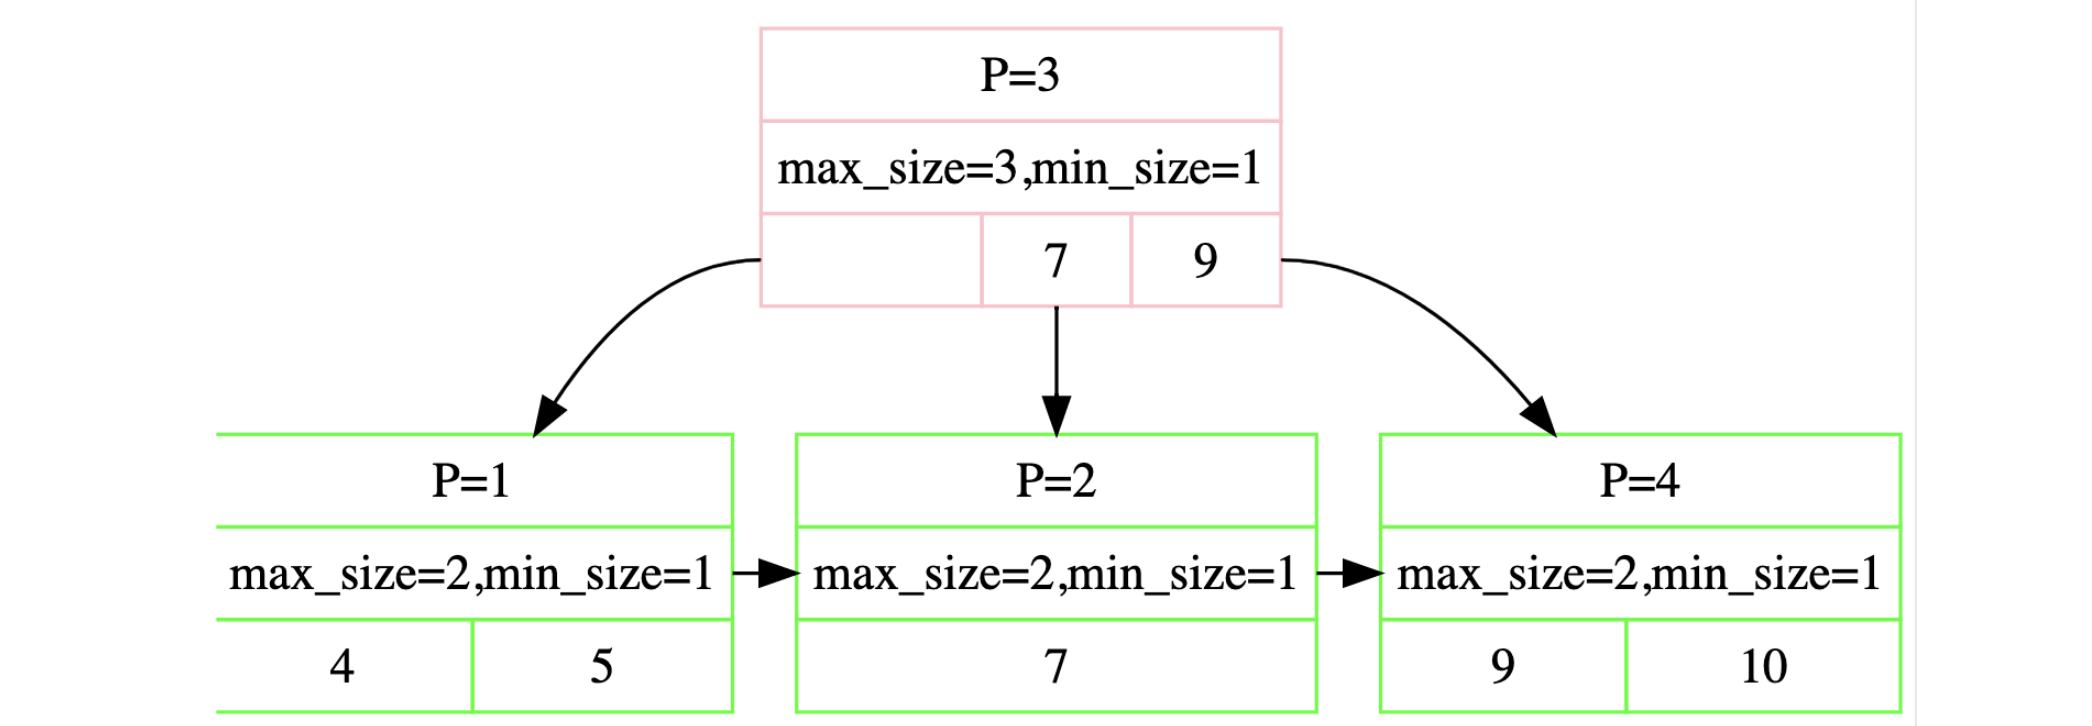 CMU数据库(15-445)-实验2-B+树索引实现(中）删除